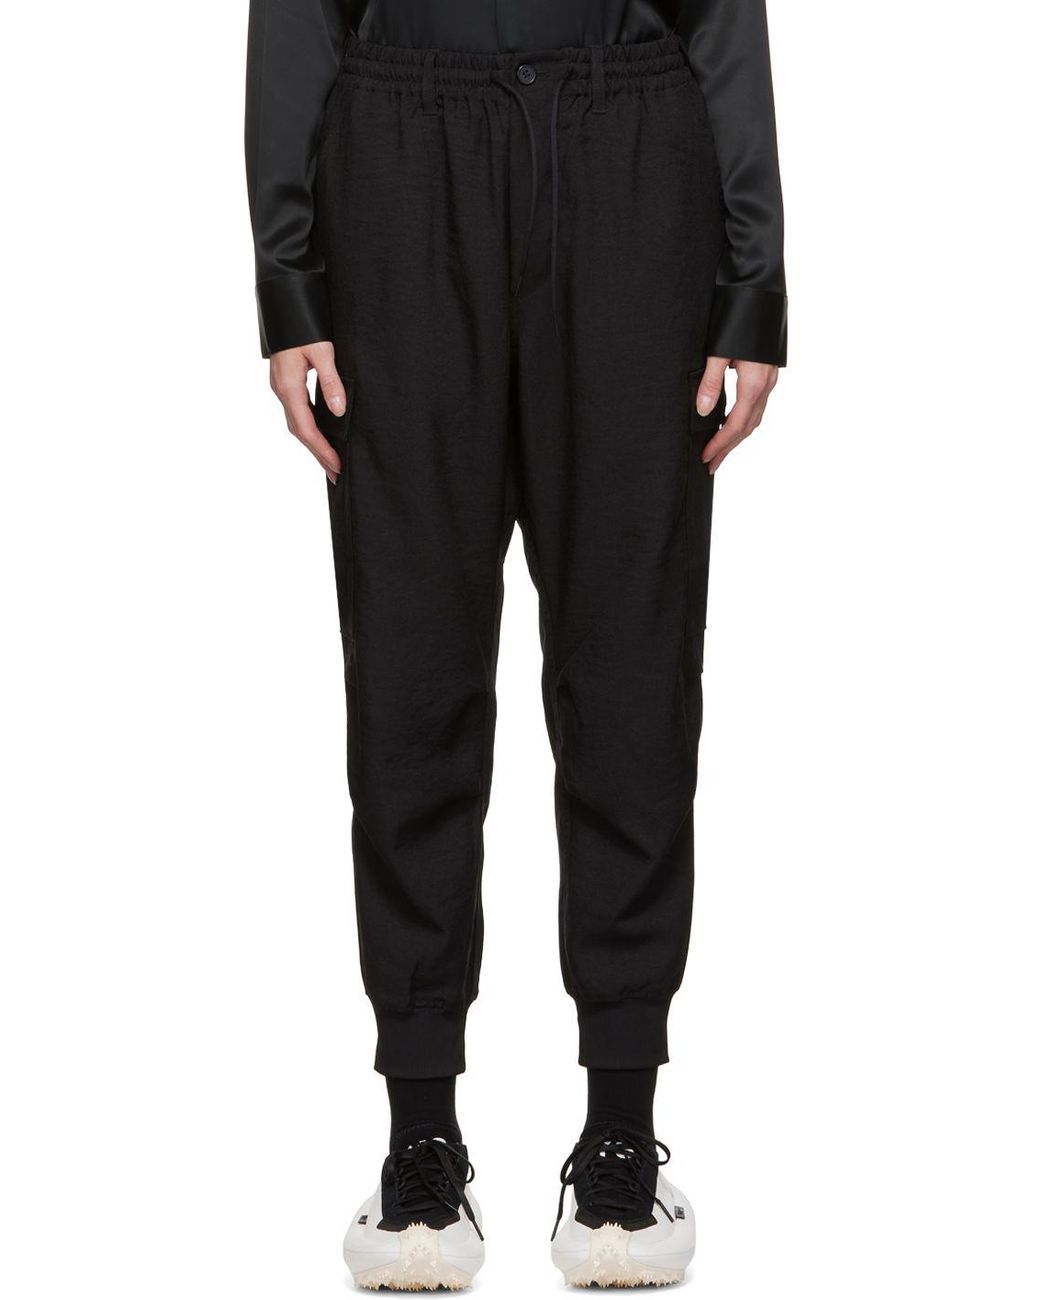 Y-3 Uniform Cuffed Trousers in Black | Lyst